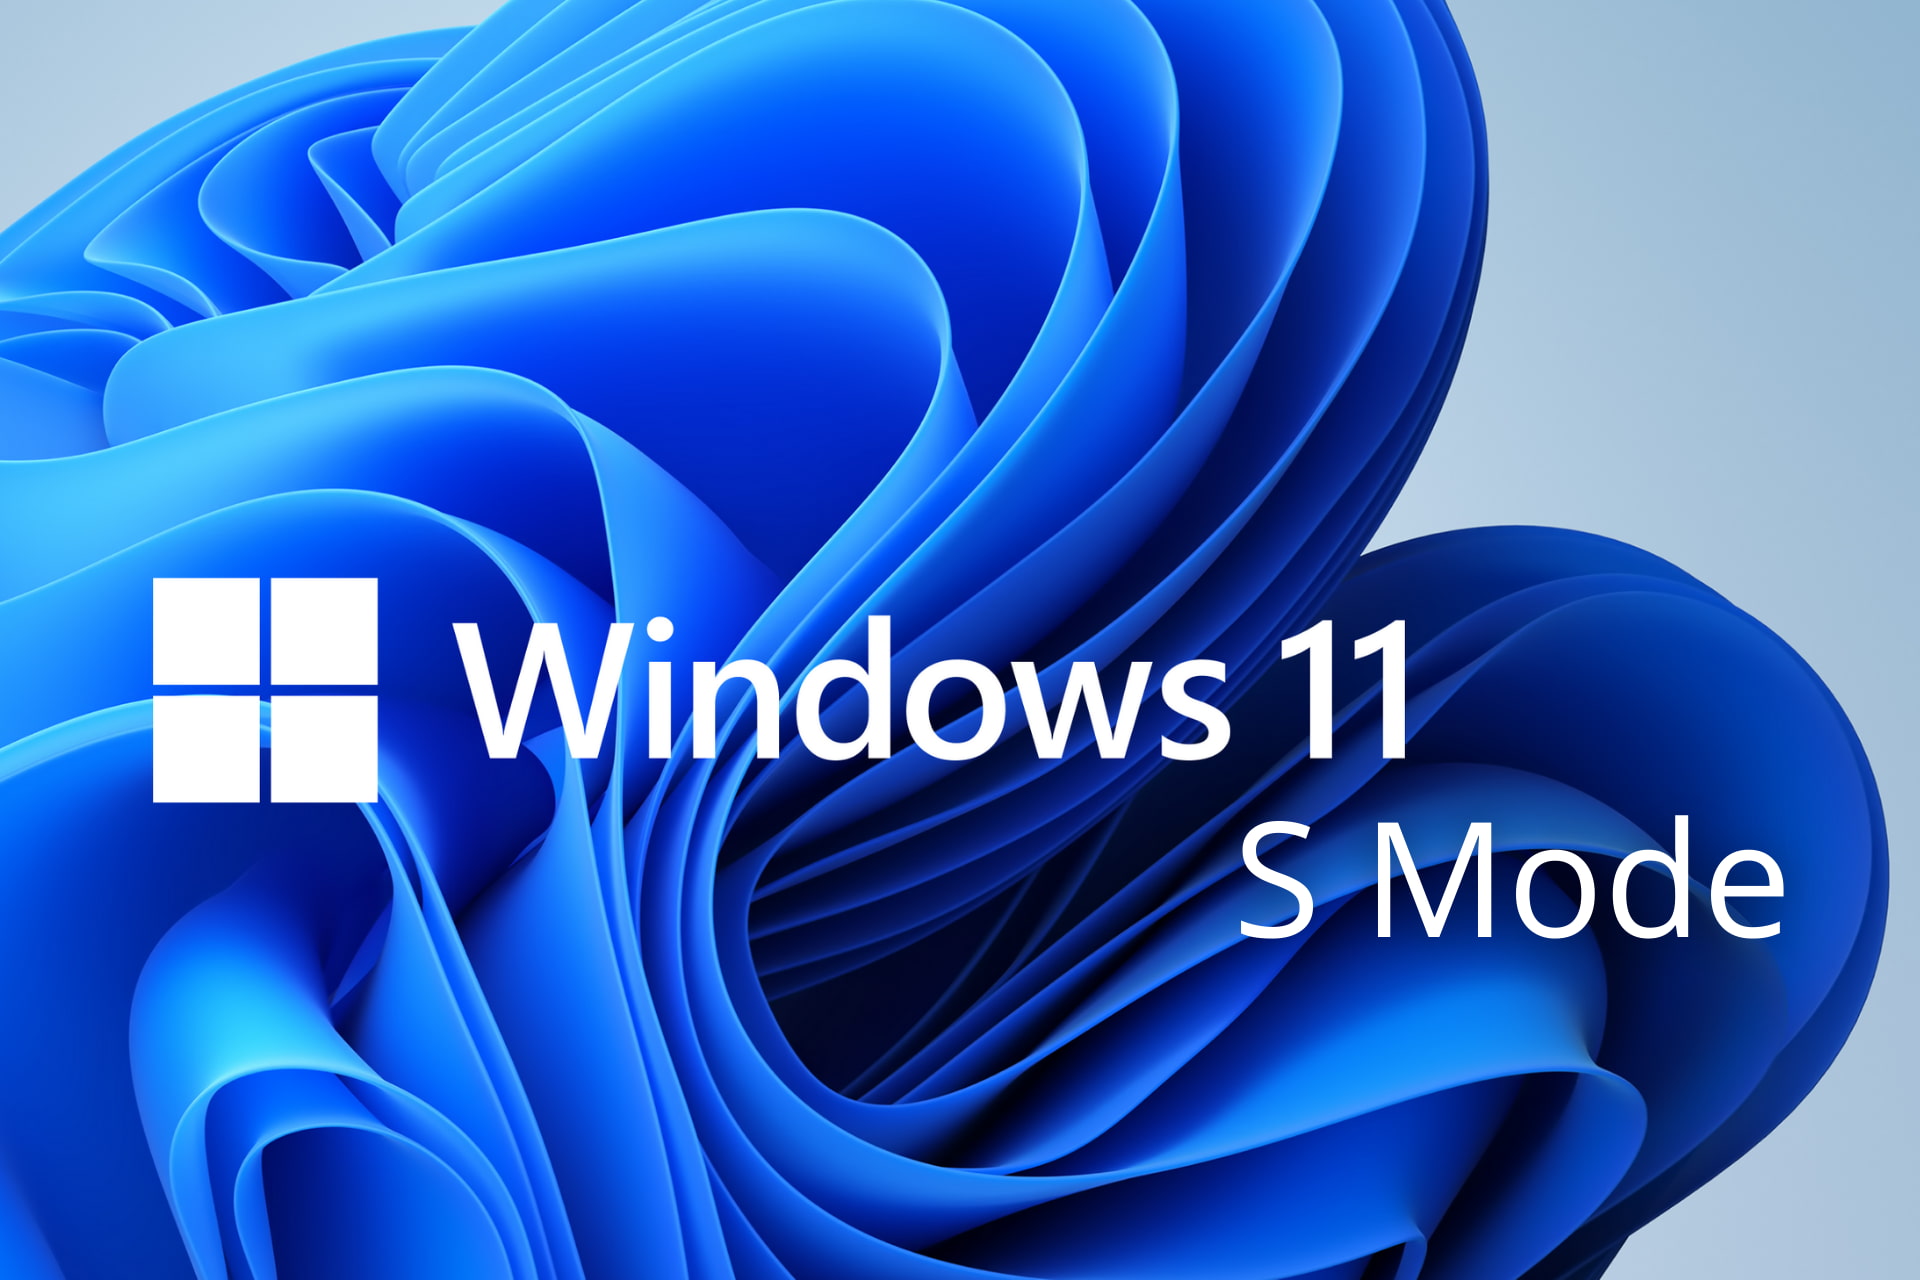 Windows 11 S Mode